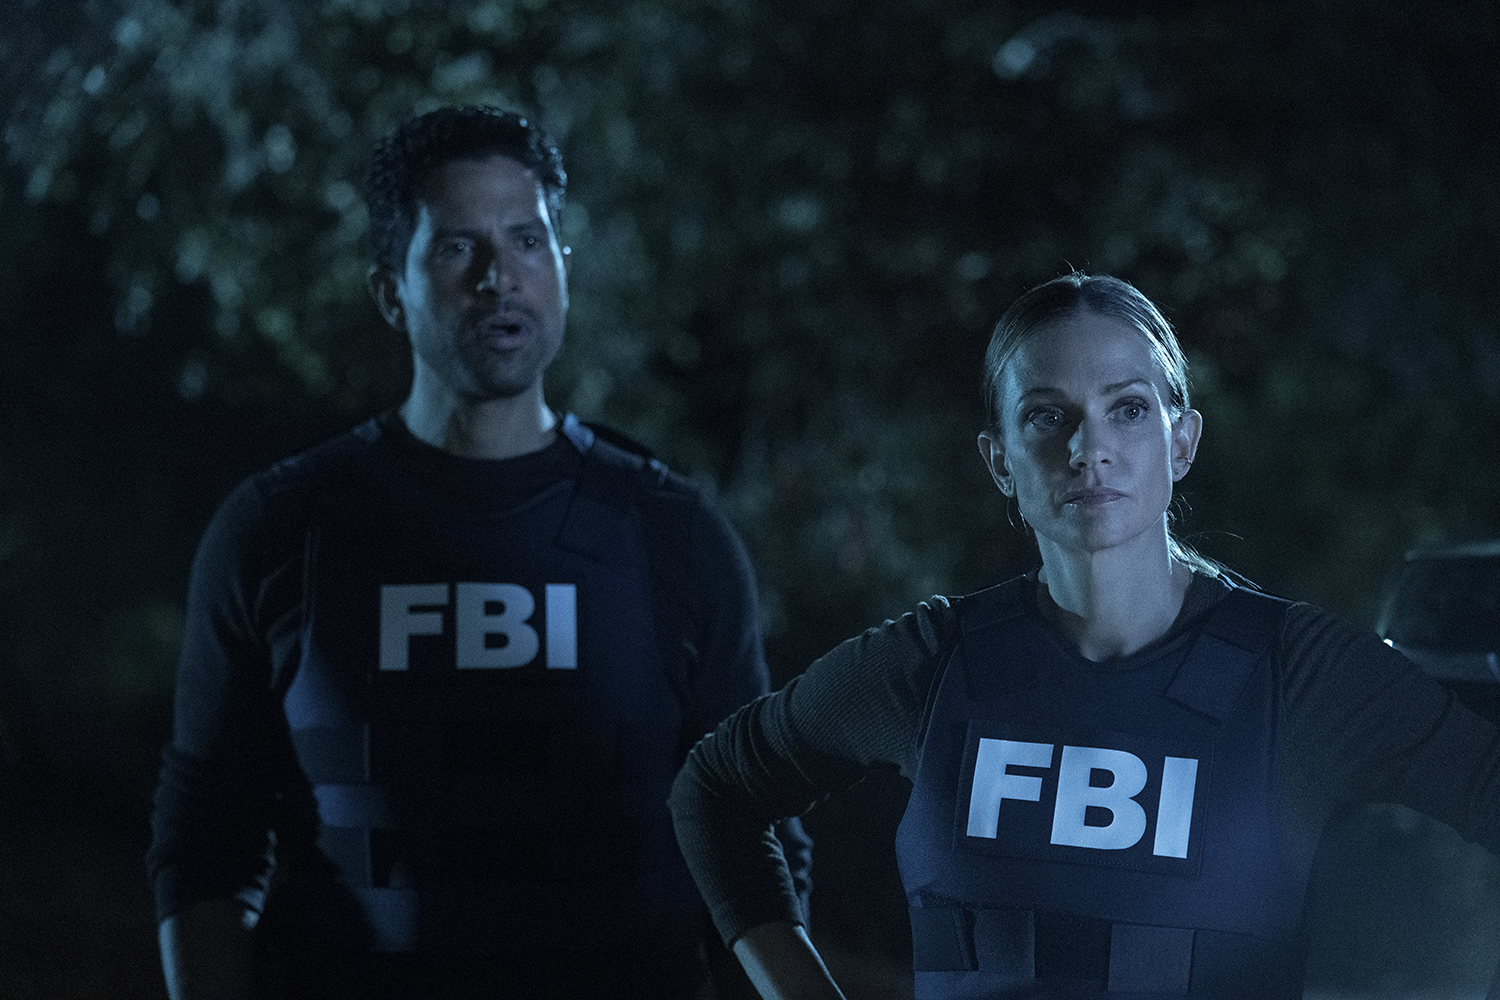 Criminal Minds: Evolution stars Adam Rodriguez as Luke Alvez and A.J. Cook as JJ wearing FBI vests in a dark forest.